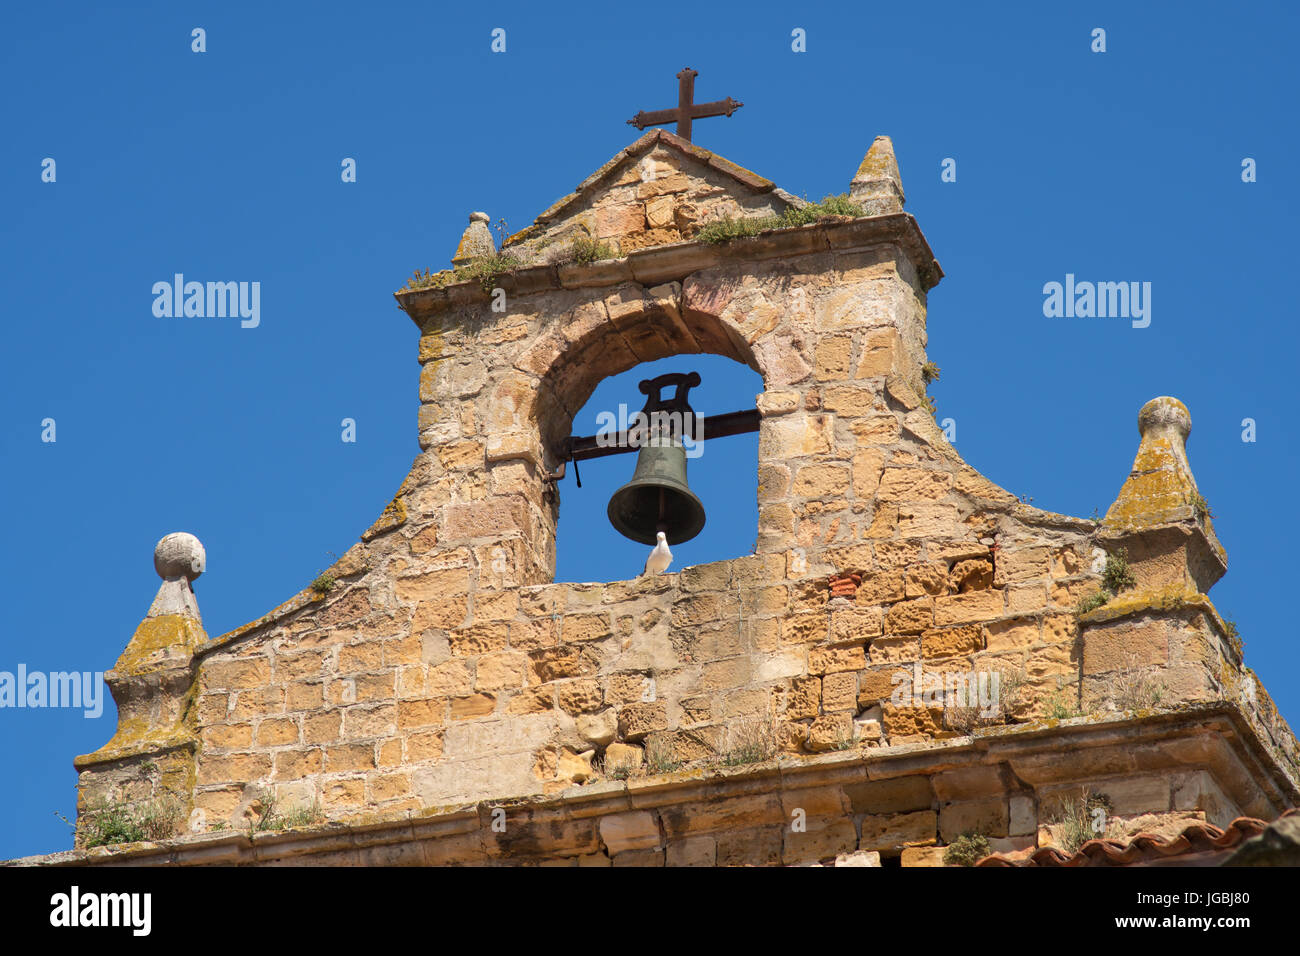 Dove sitting on entry arch bell tower of Iglesia de Santa María de la Asunción, Laredo, Cantabria, Spain Stock Photo